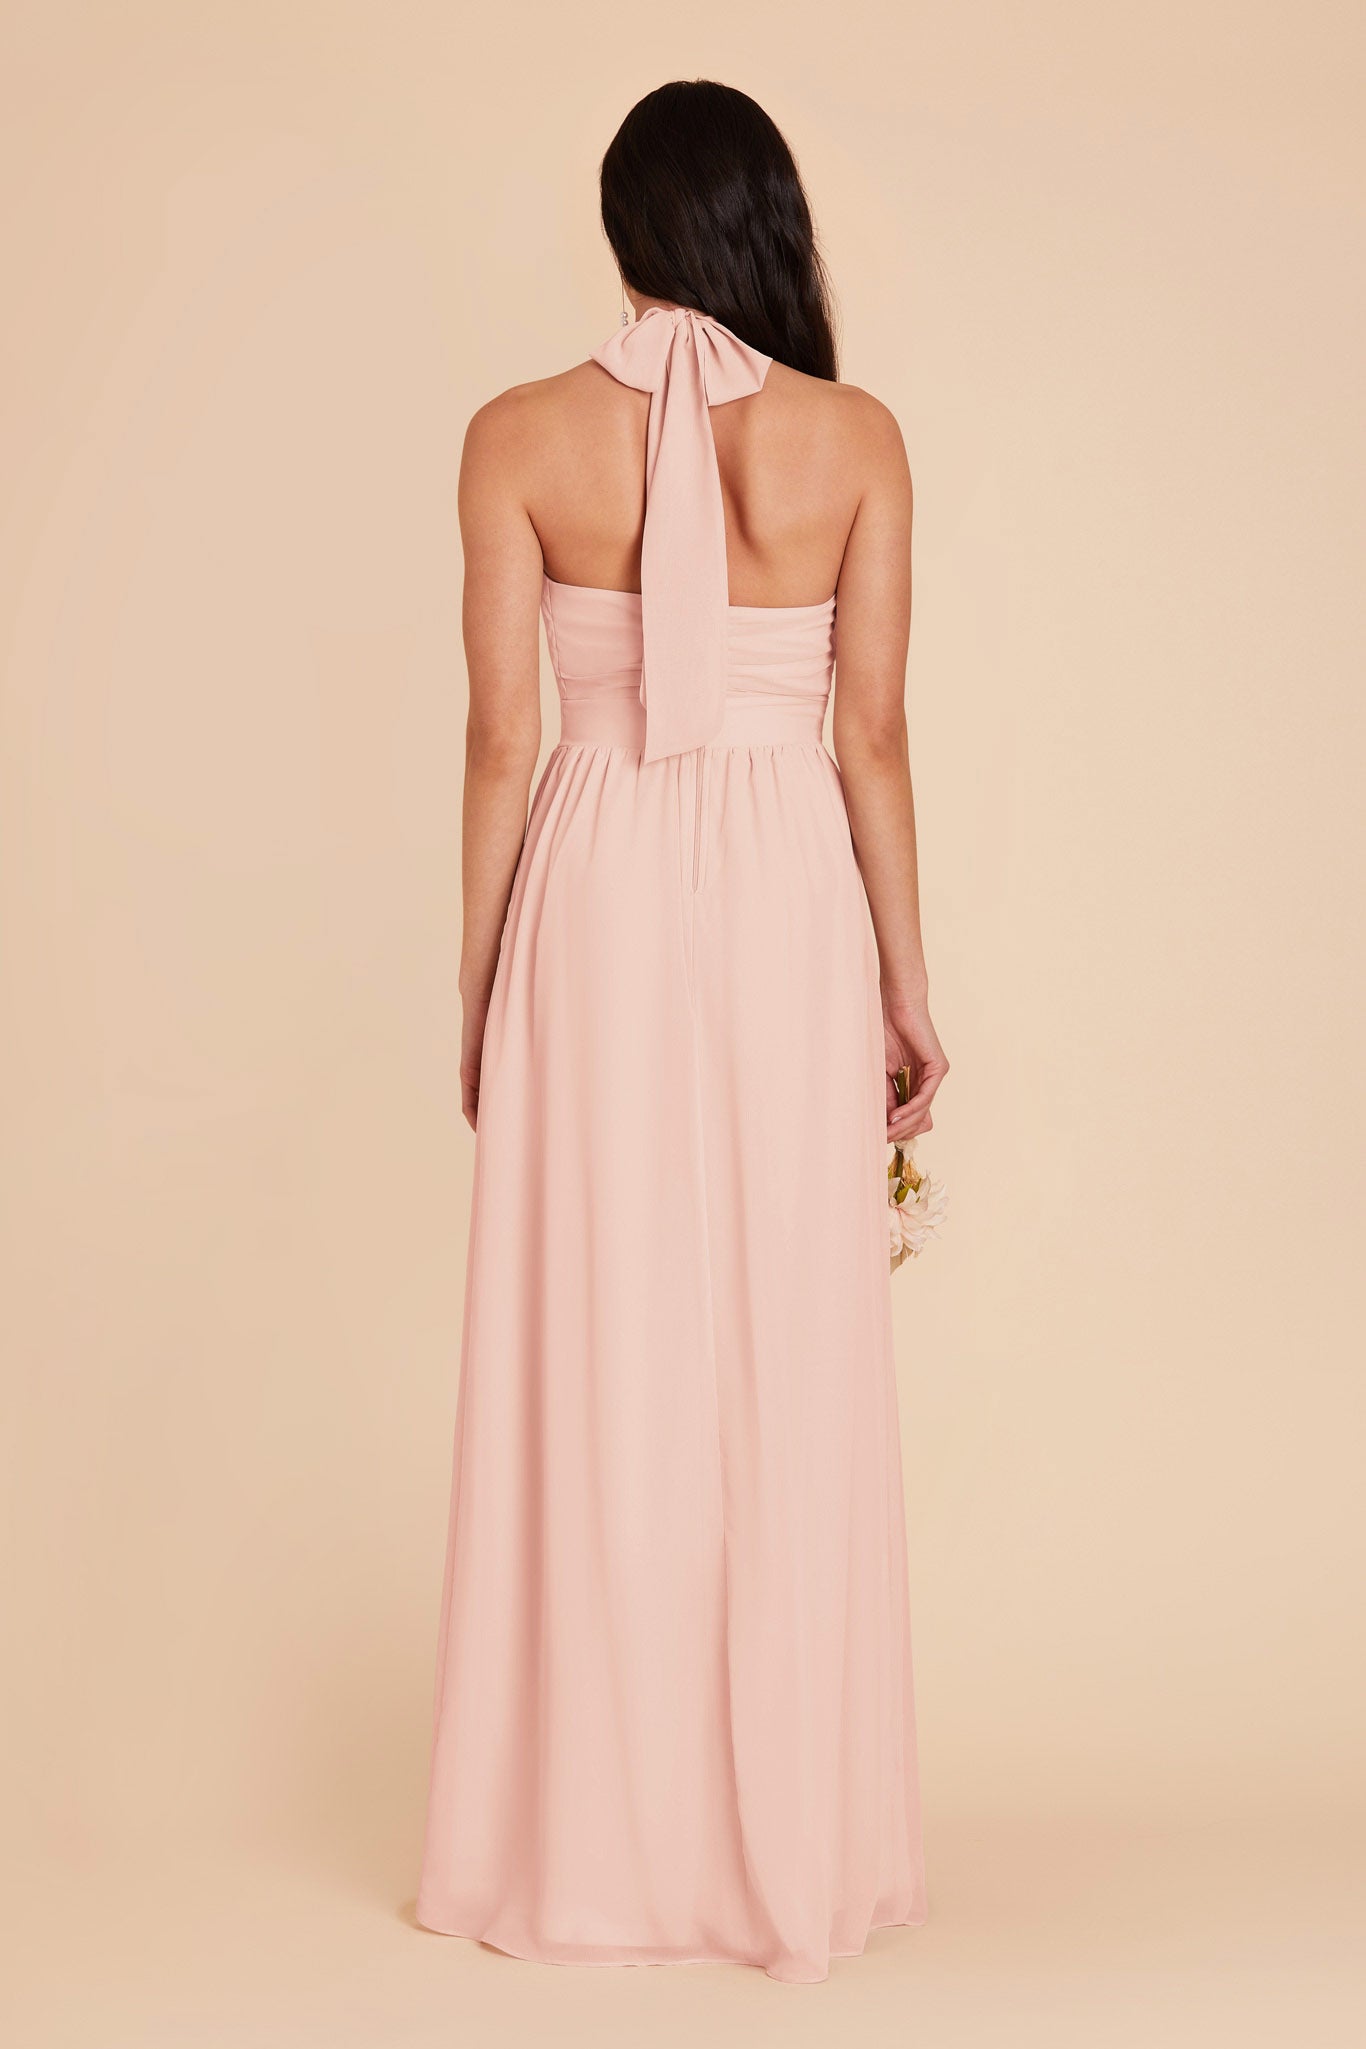 Blush Pink Joyce Chiffon Dress by Birdy Grey